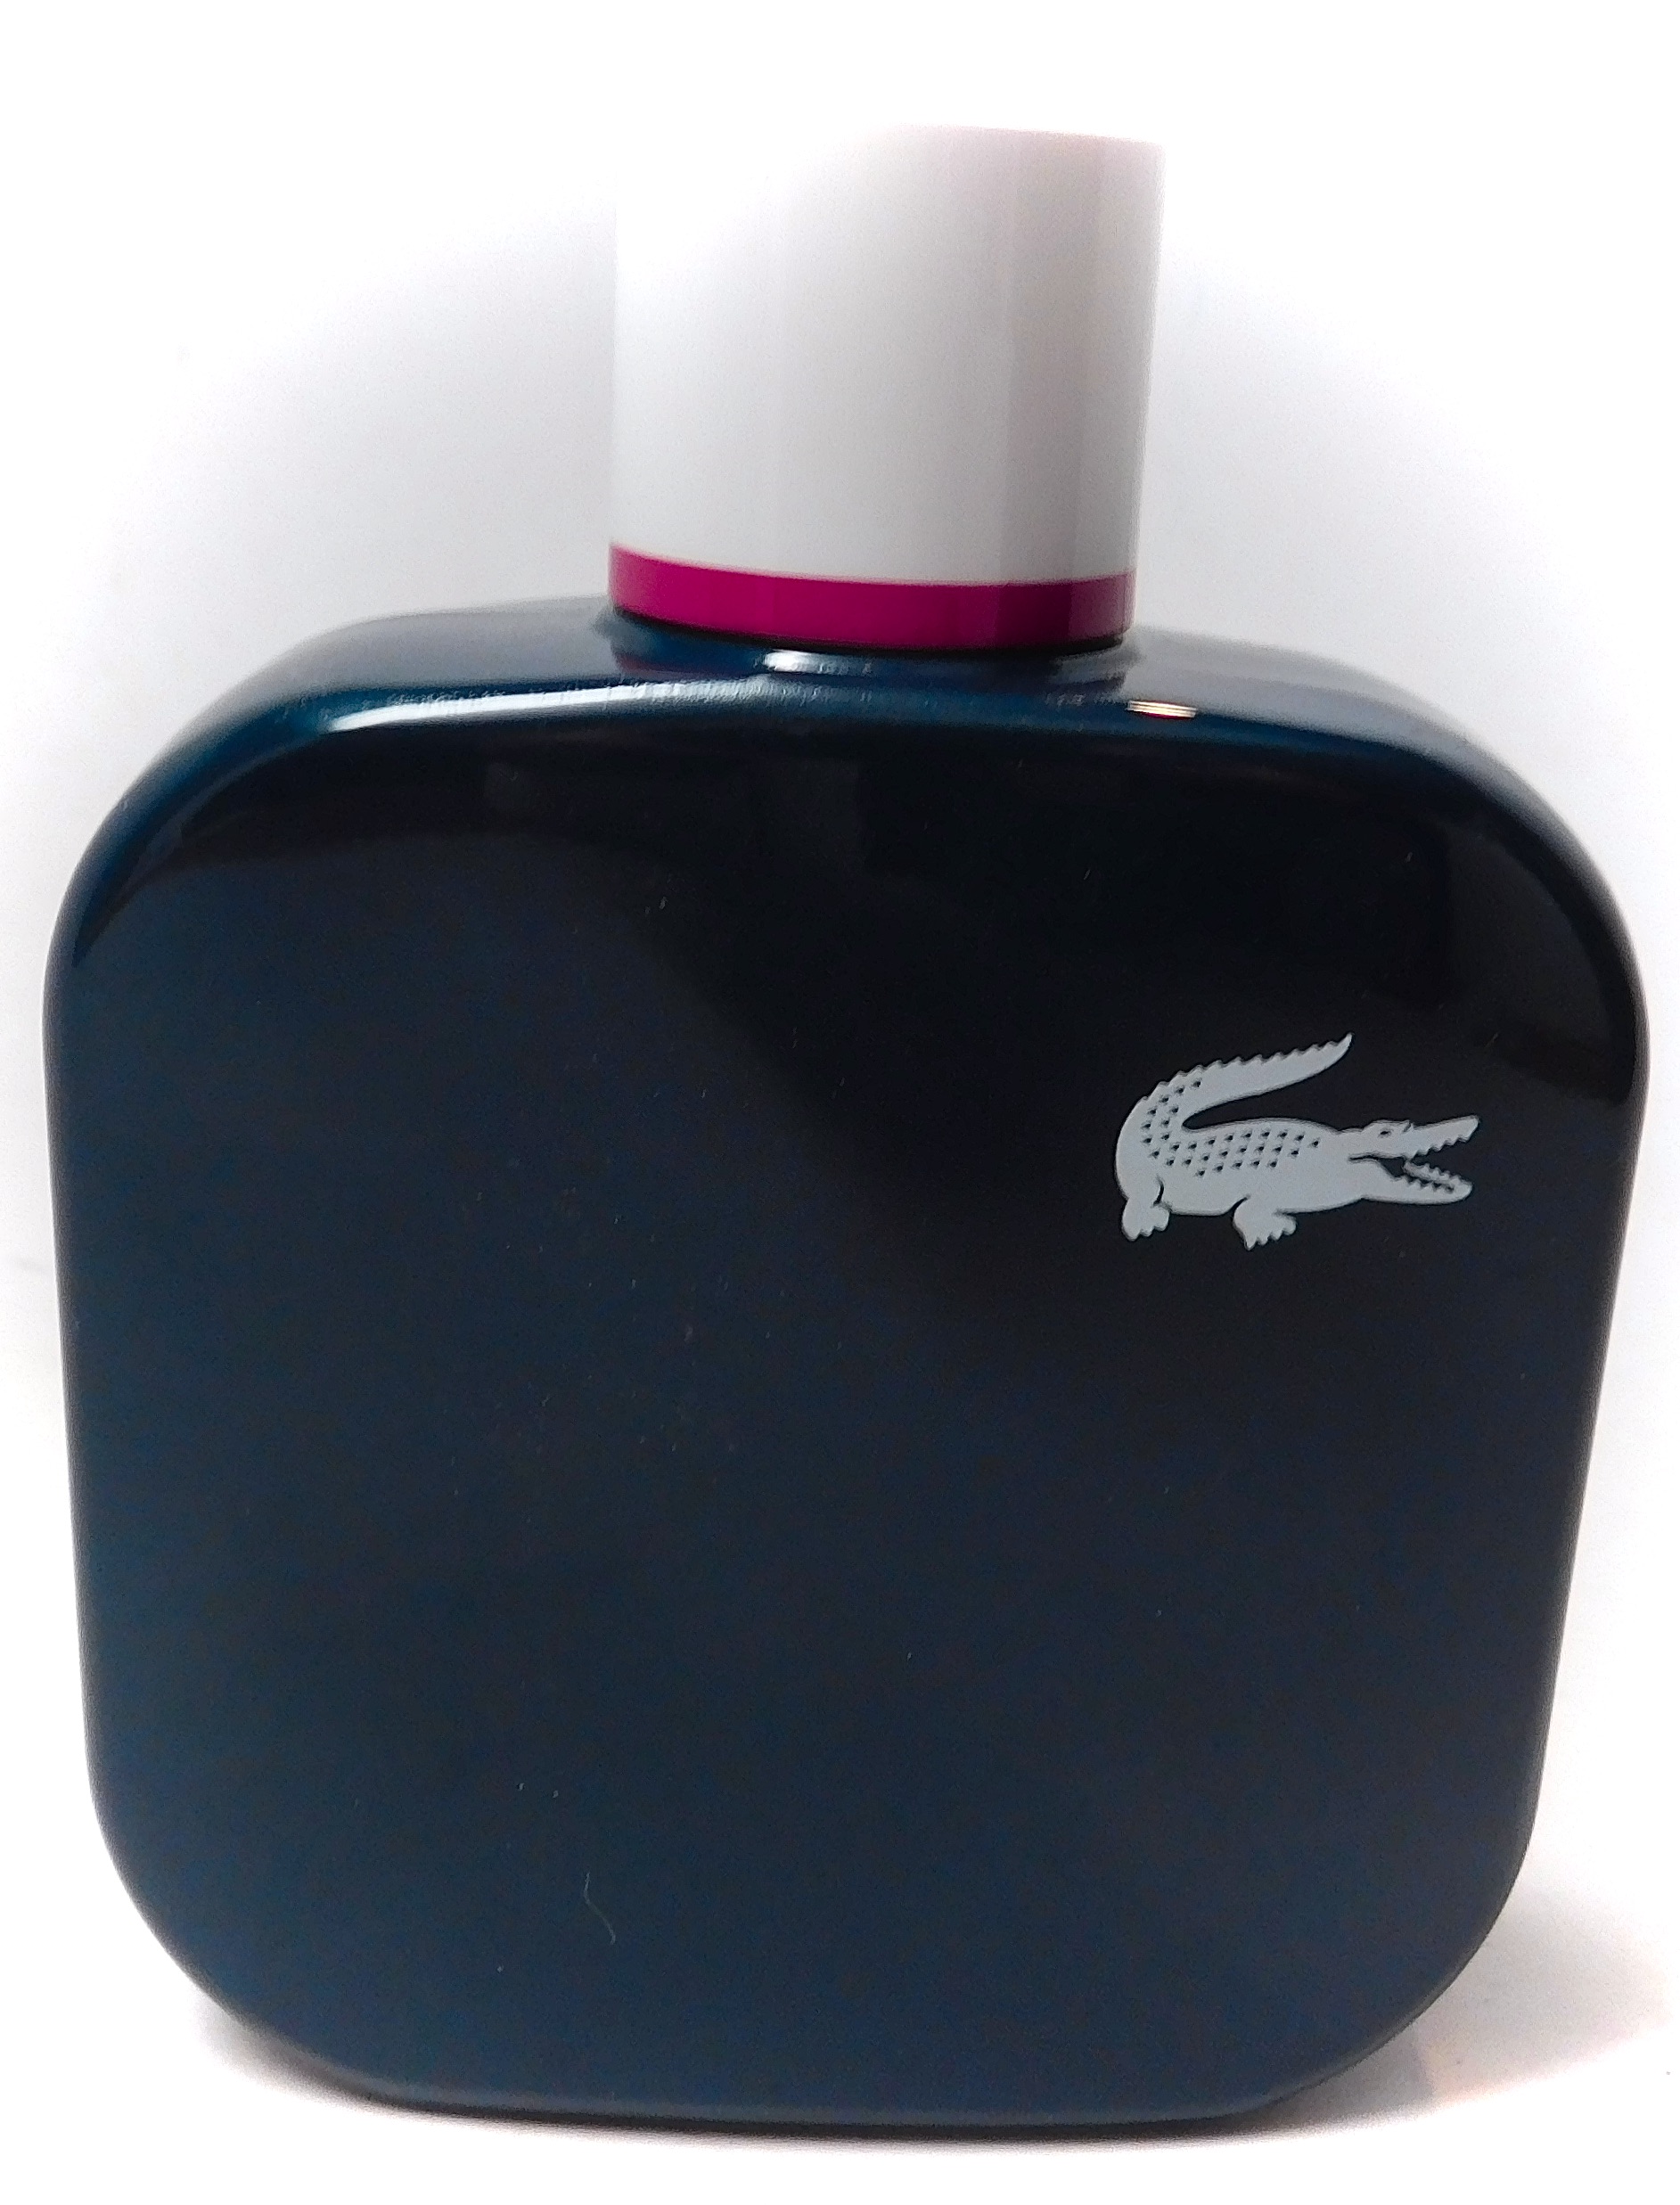 lacoste perfume blue bottle